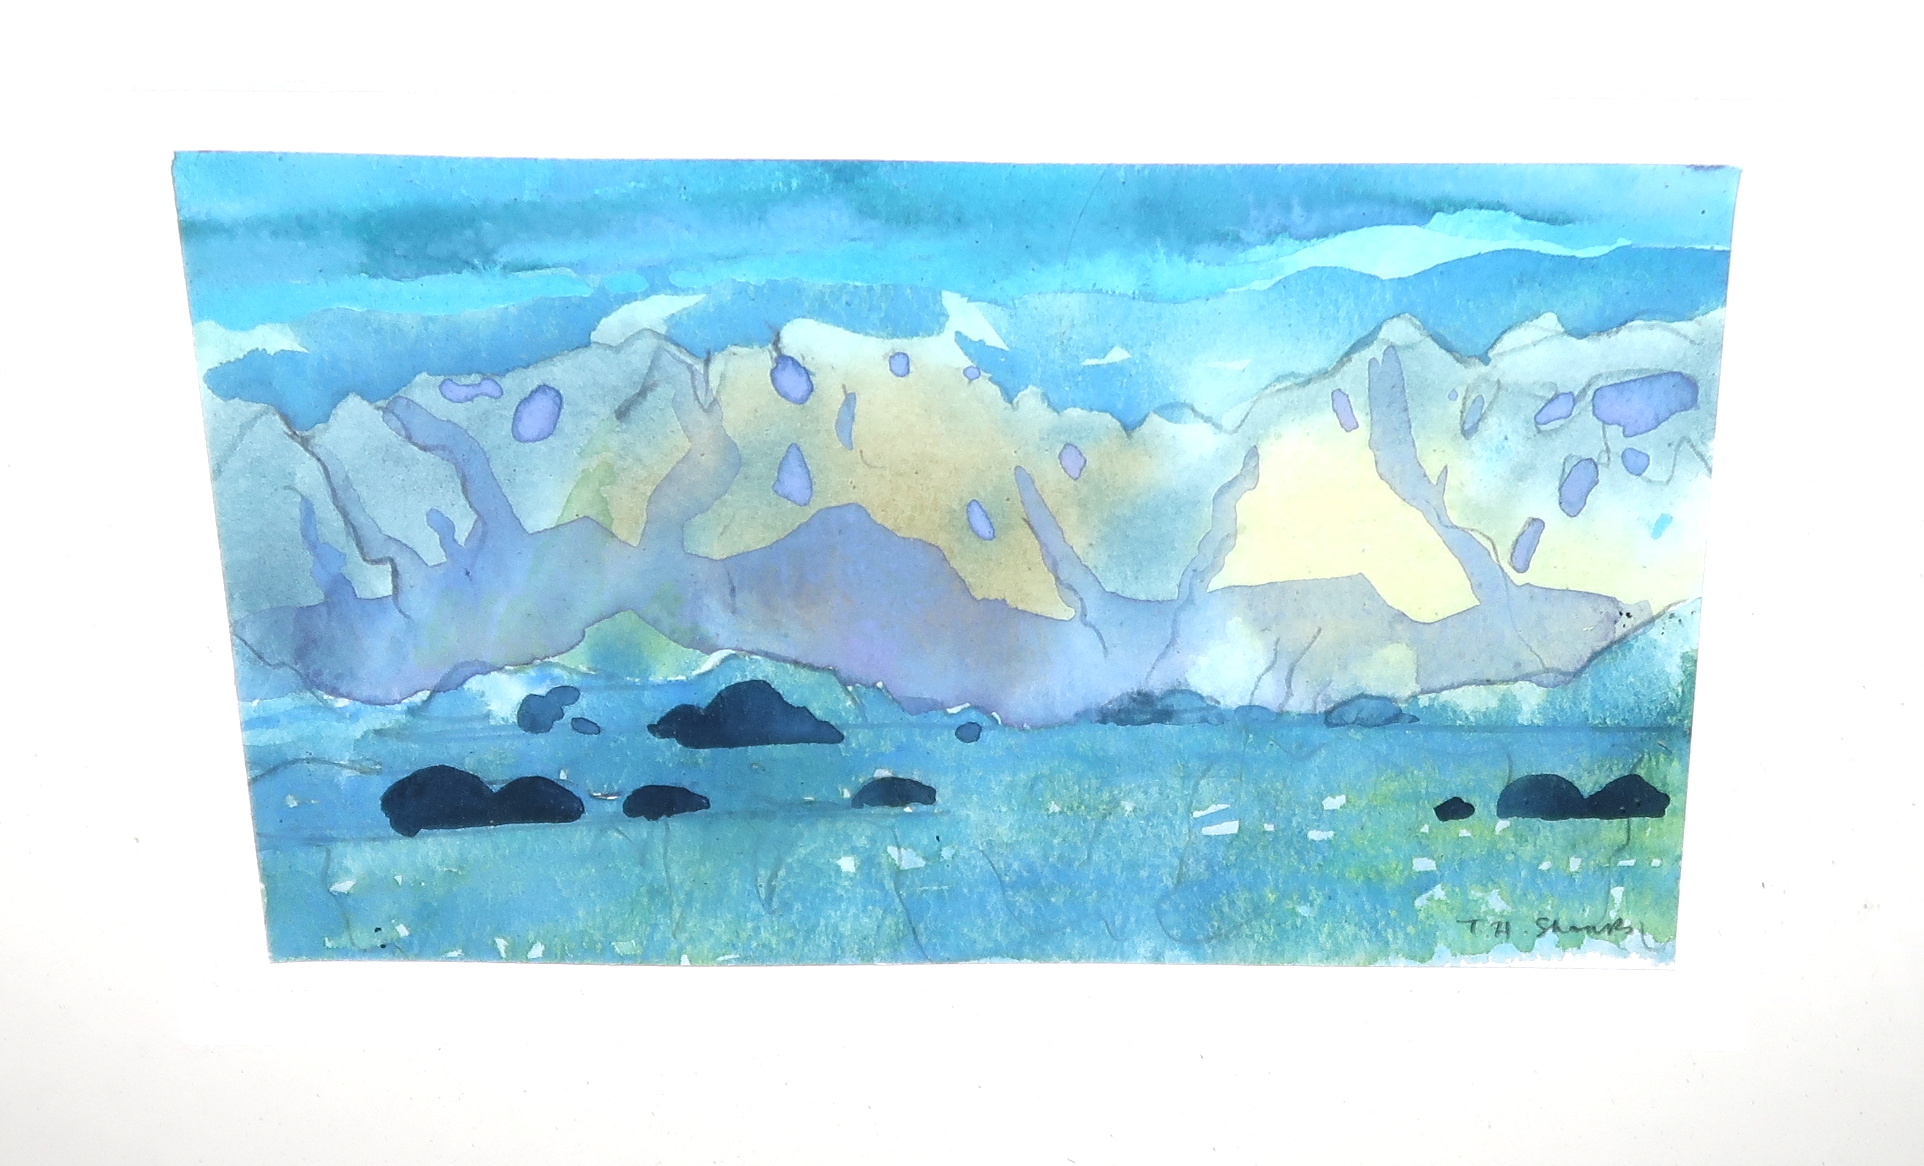 TOM H SHANKS RSW, RGI, PAI Mountainous landscape, signed, watercolour, 14 x 23cm Condition Report: